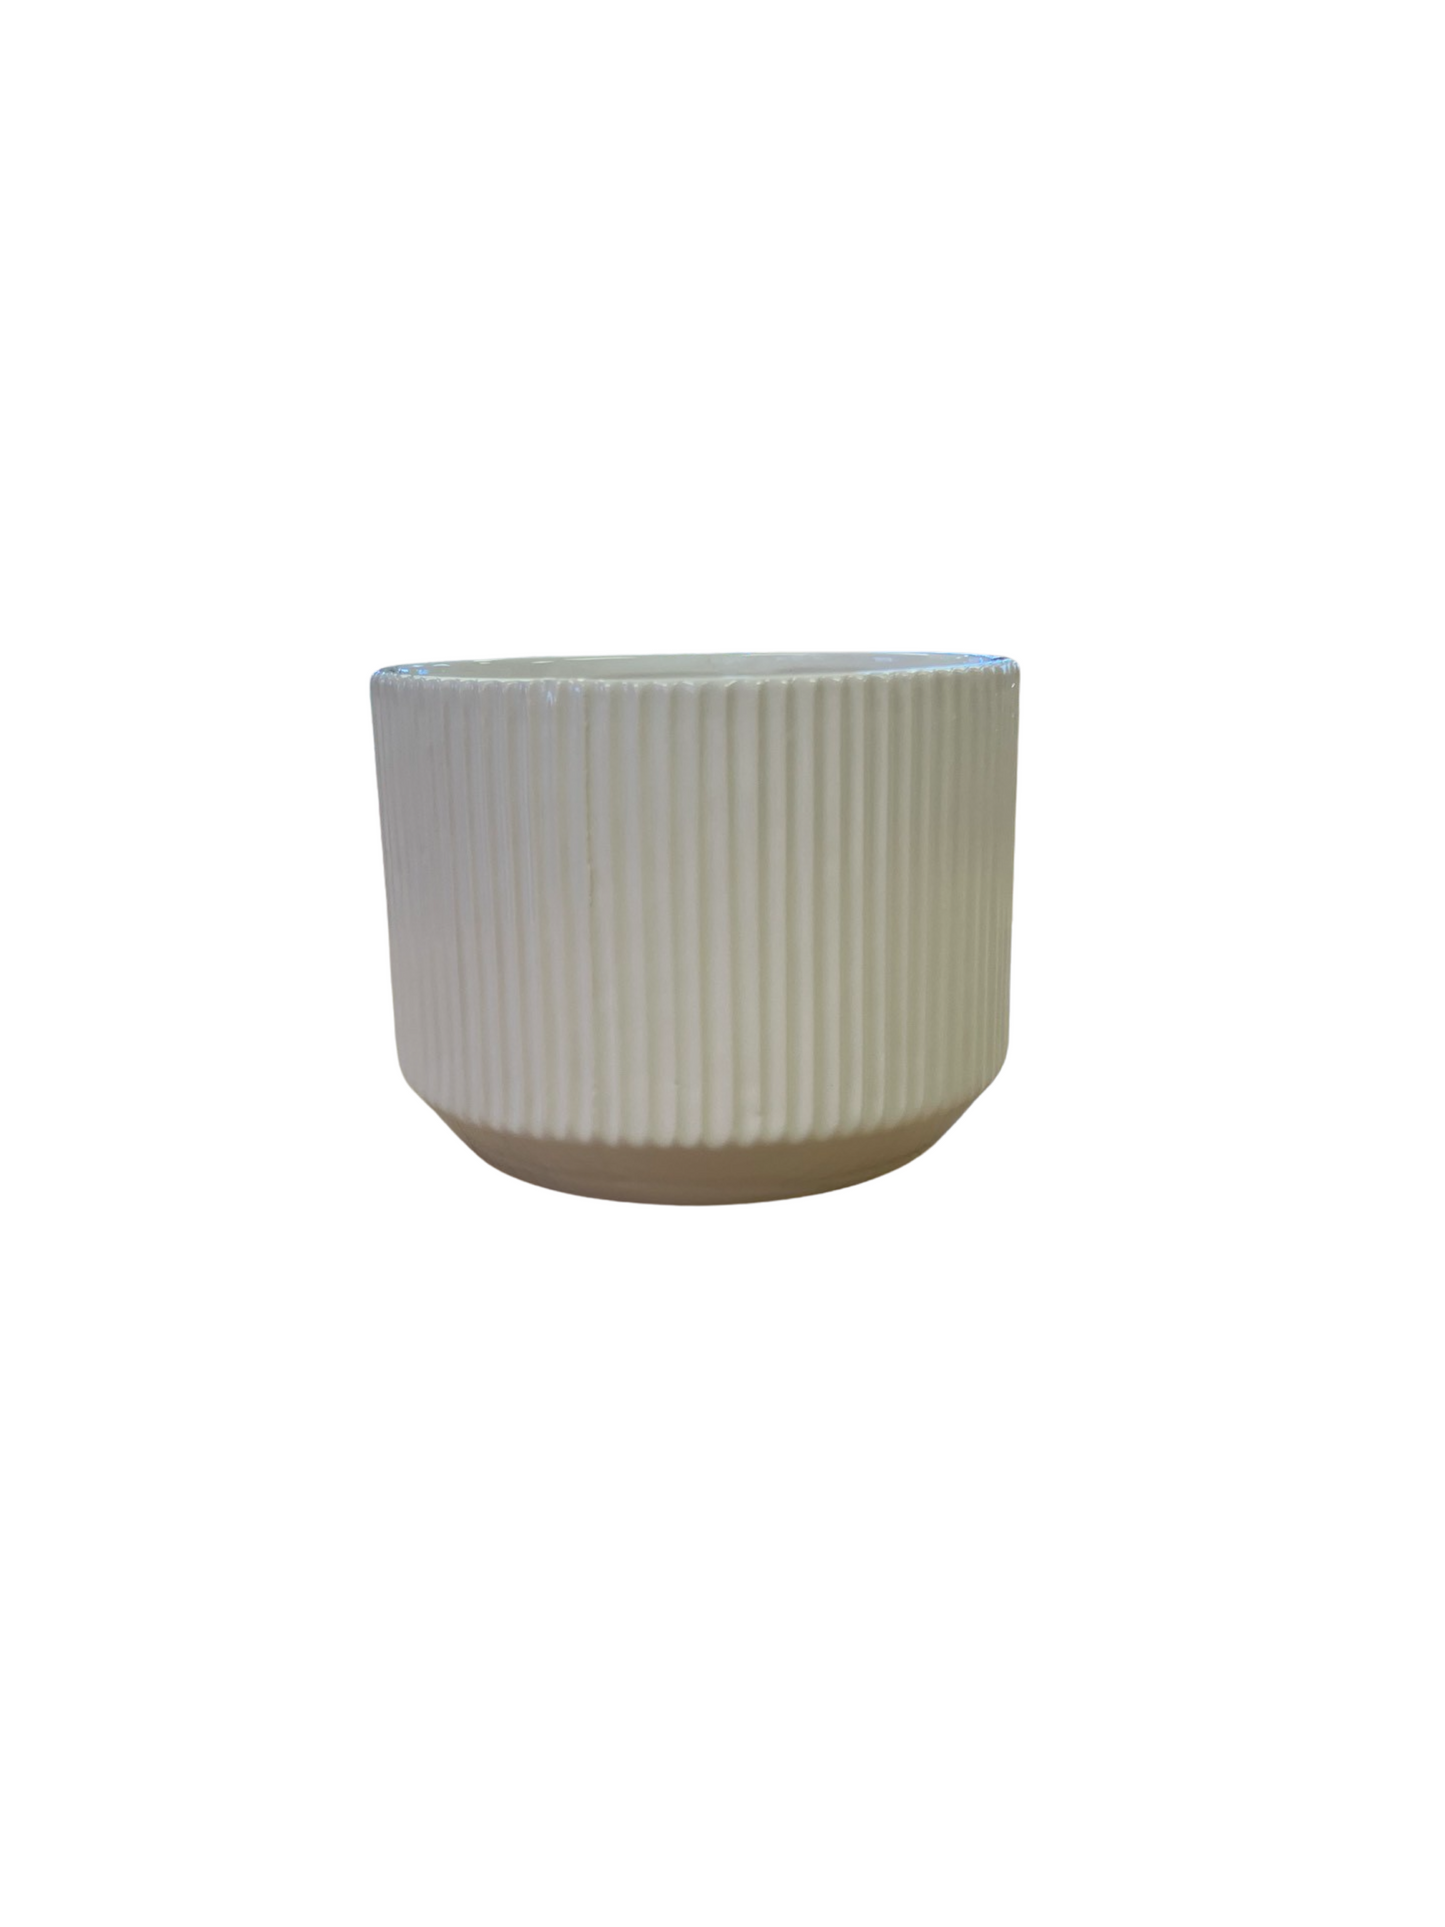 Ceramic Cache Pot - Abigail - White - 6"